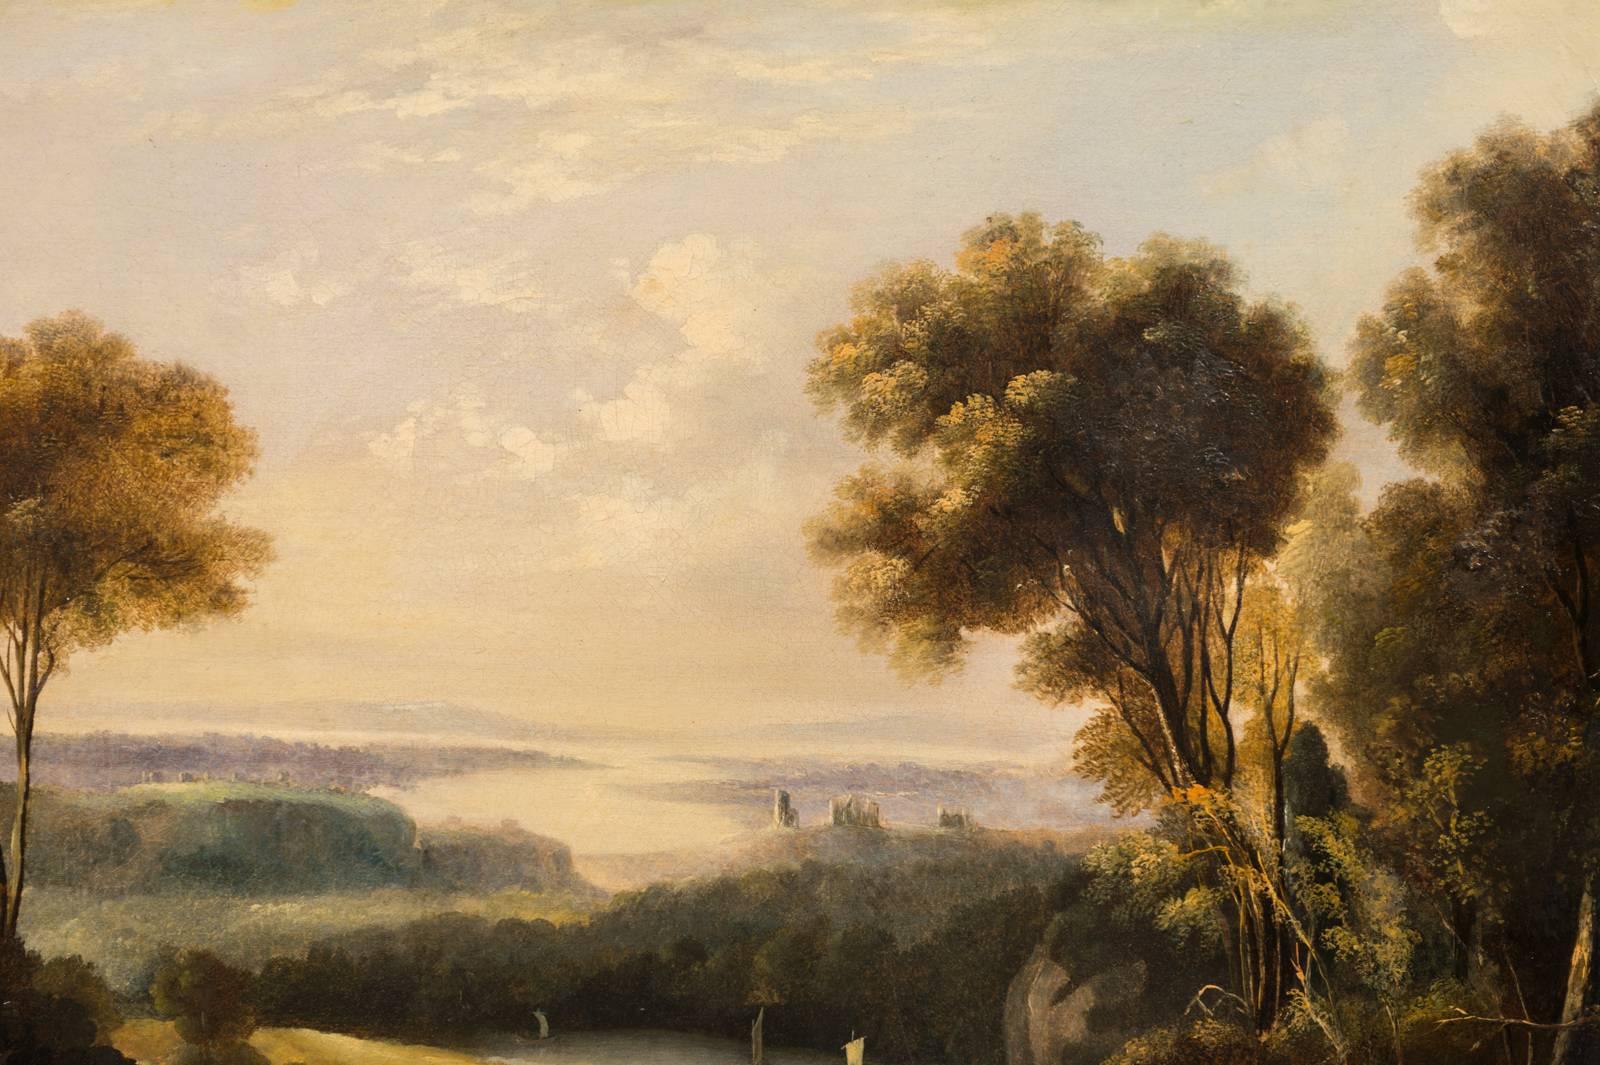 Huile sur toile britannique d'Anthony Vandyke Copley Fielding.

Britannique, 1787-1855.

Signé en bas à gauche : Copley fielding.

Encadré : 28